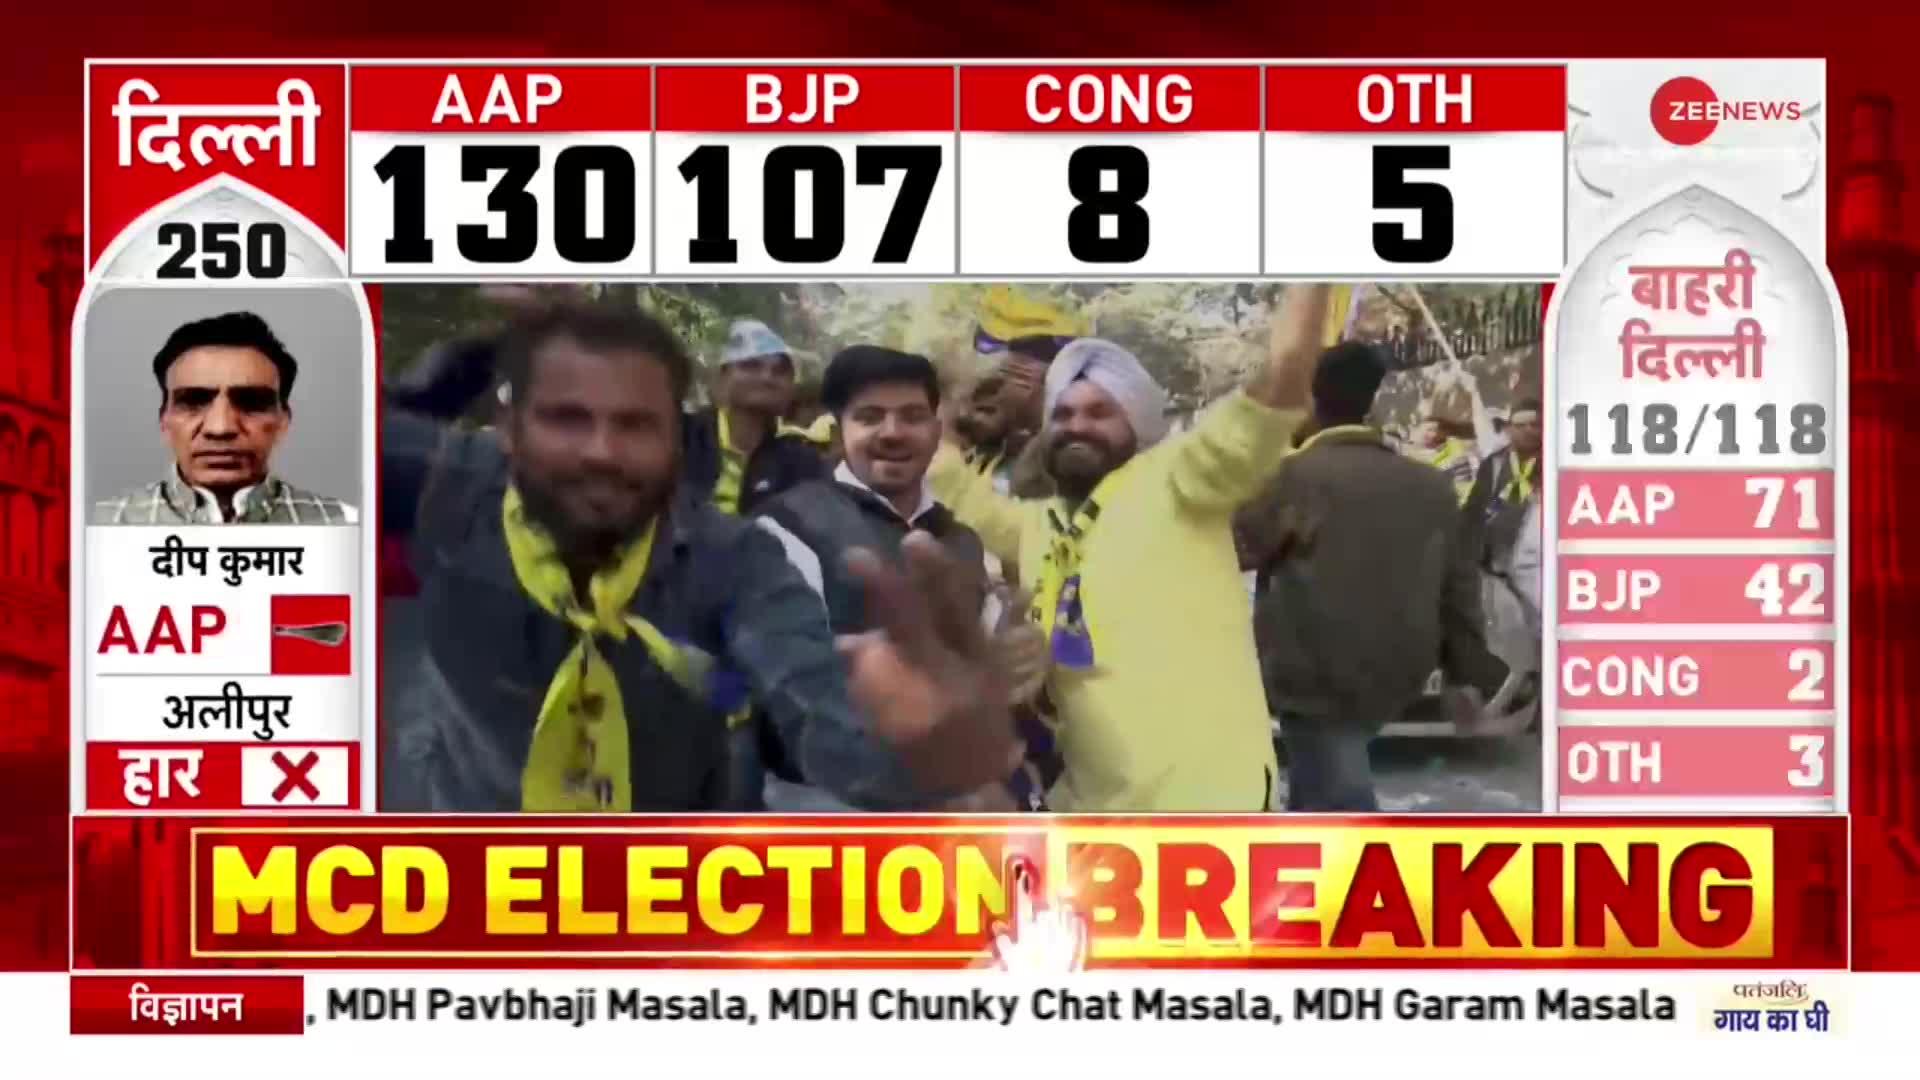 MCD Election Vote Counting: AAP के मंत्री Satyendar Jain के तीनों वार्डों में आम आदमी पार्टी की हार